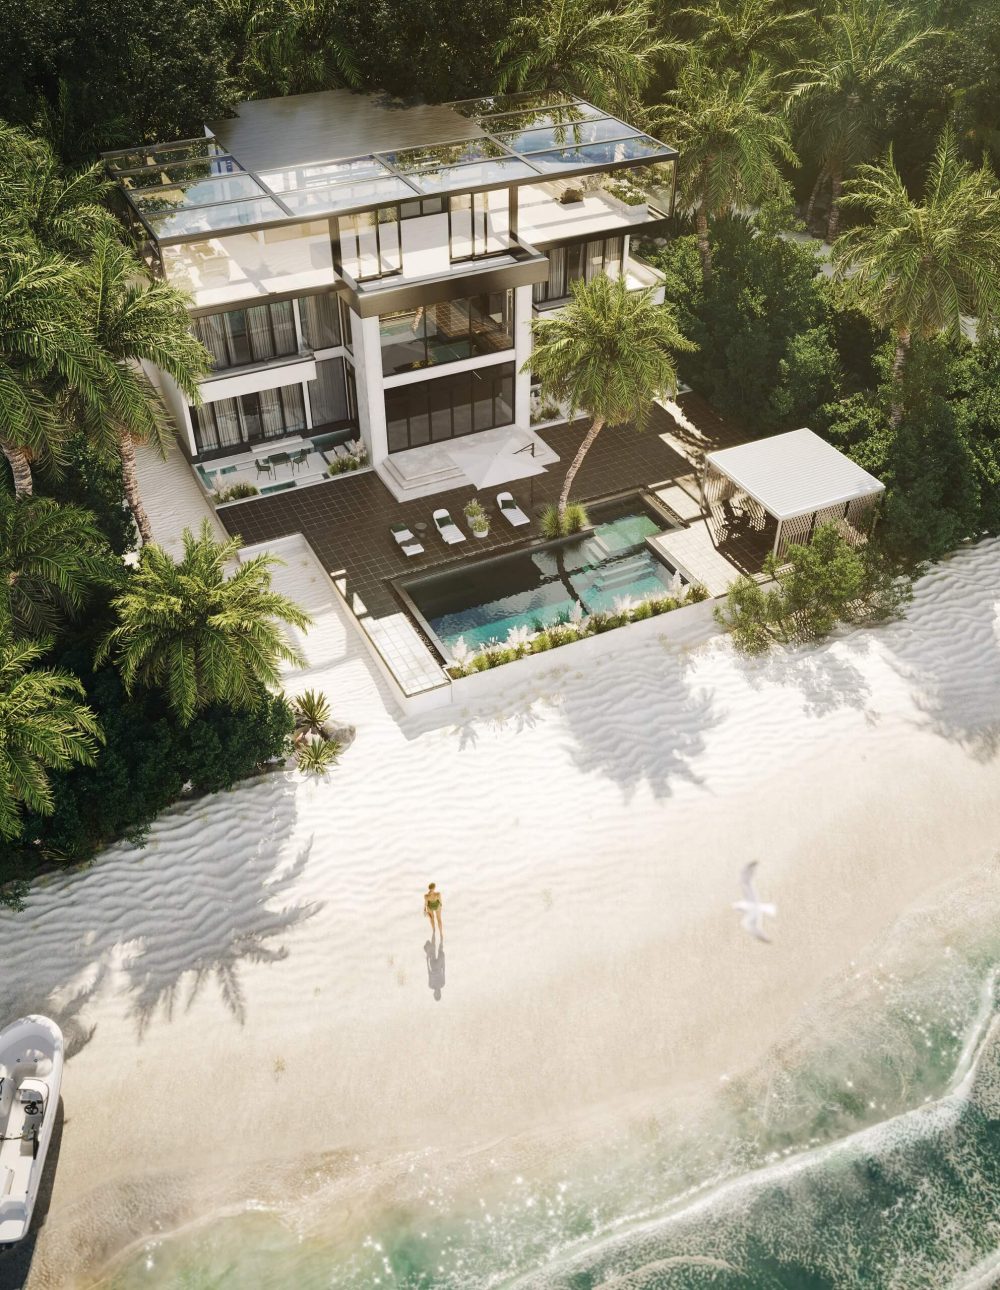 3D Real Estate Render for a Seaside Villa